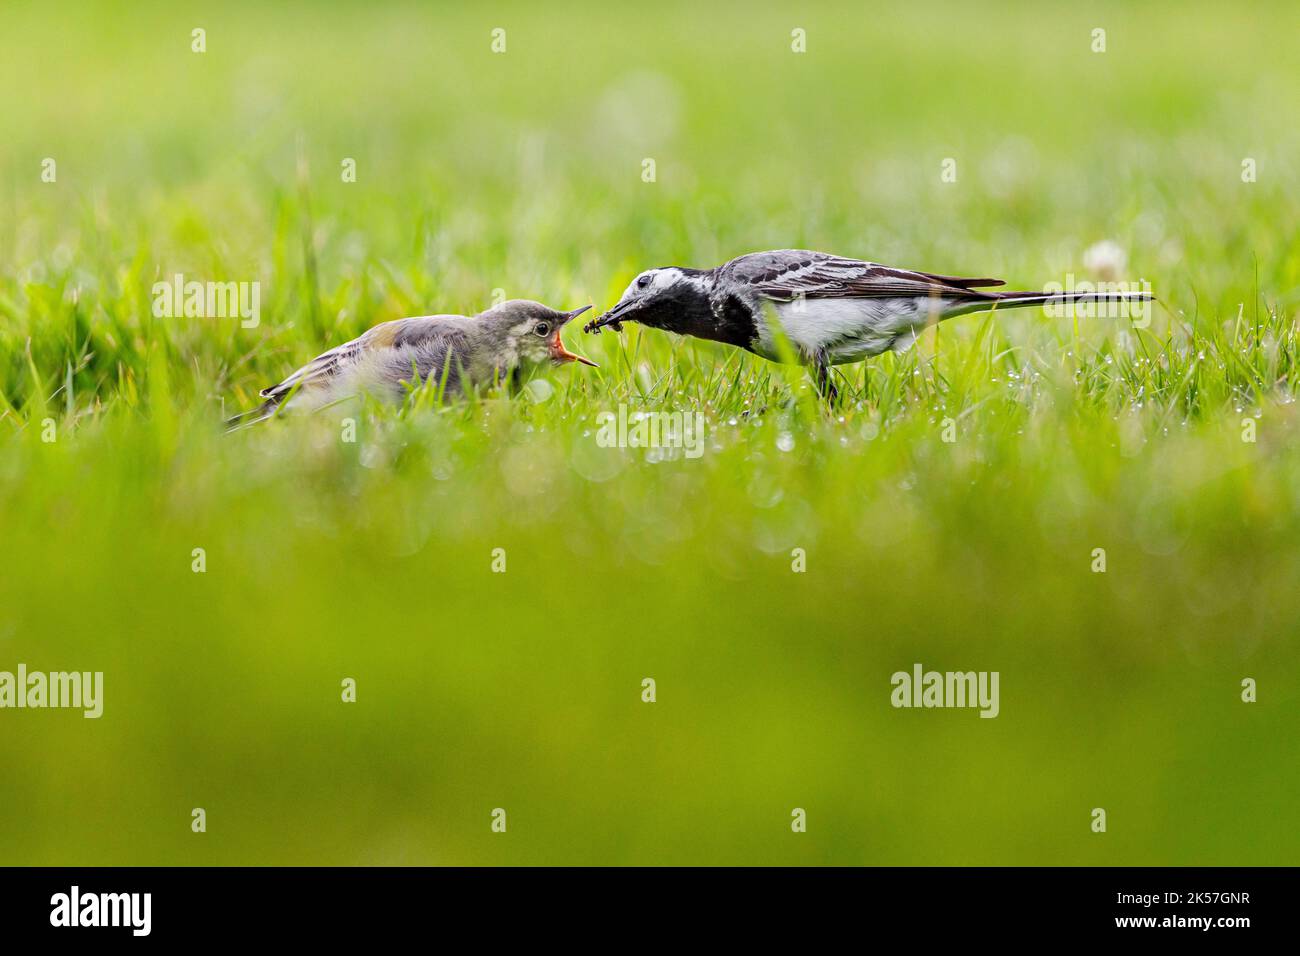 Francia, Eure, vicino a Pont-Audemer, uccelli da giardino, passeriform, Wagtail bianco (Motacilla alba), alimentando il suo pulcino con un insetto Foto Stock